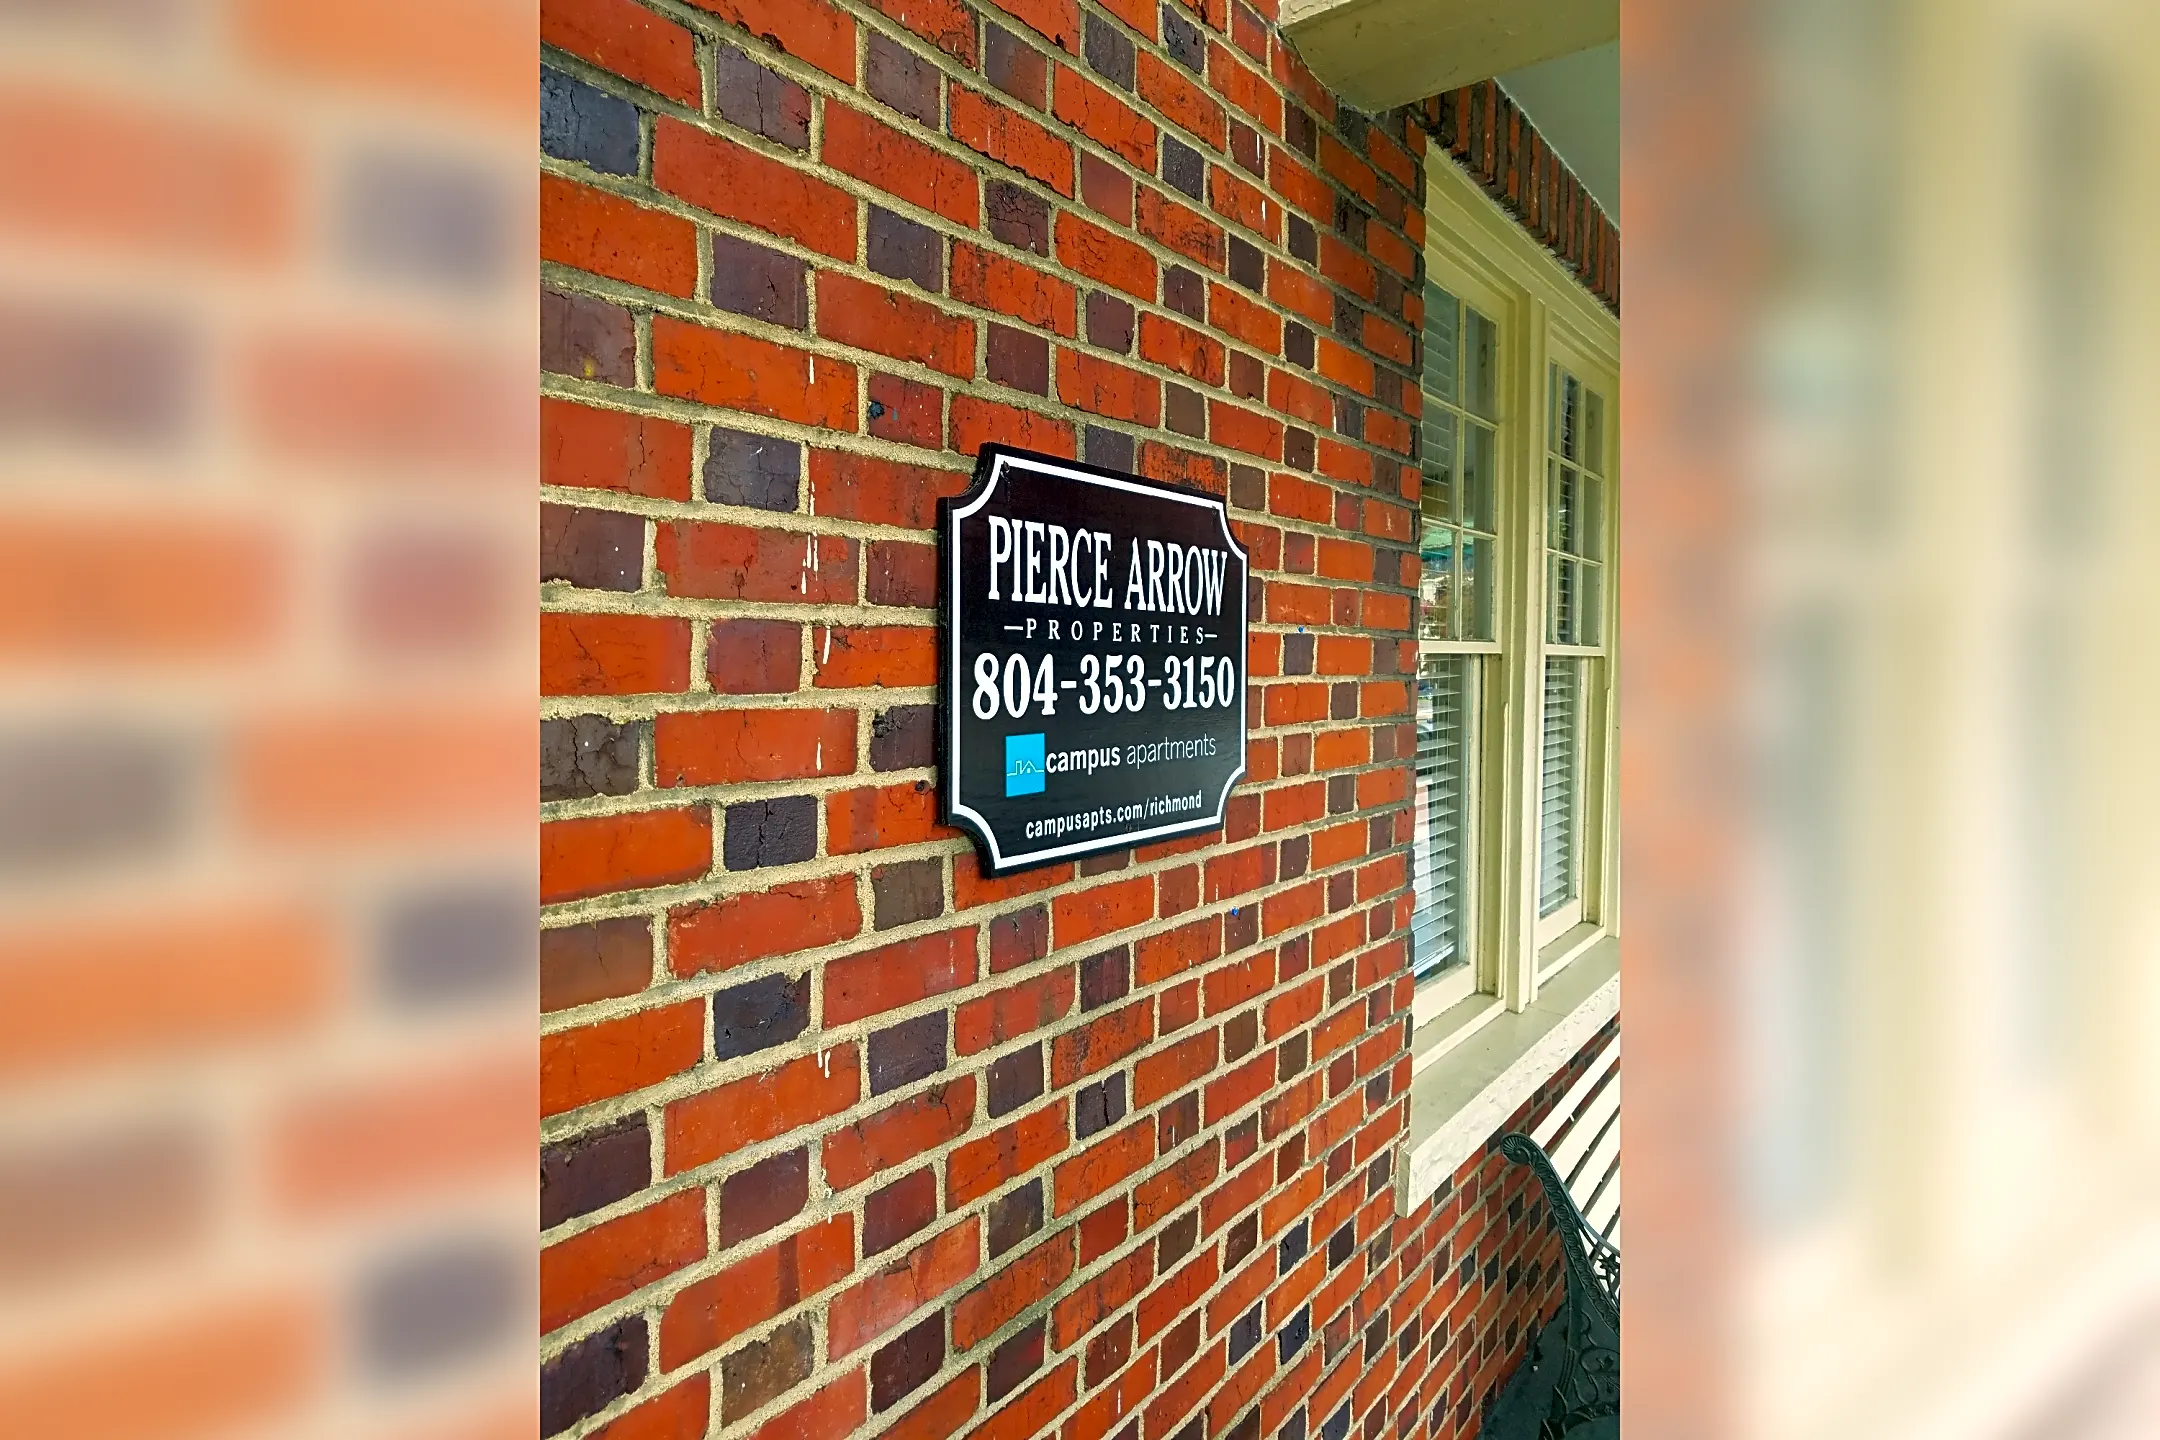 Pool - Pierce Arrow Properties - Richmond, VA